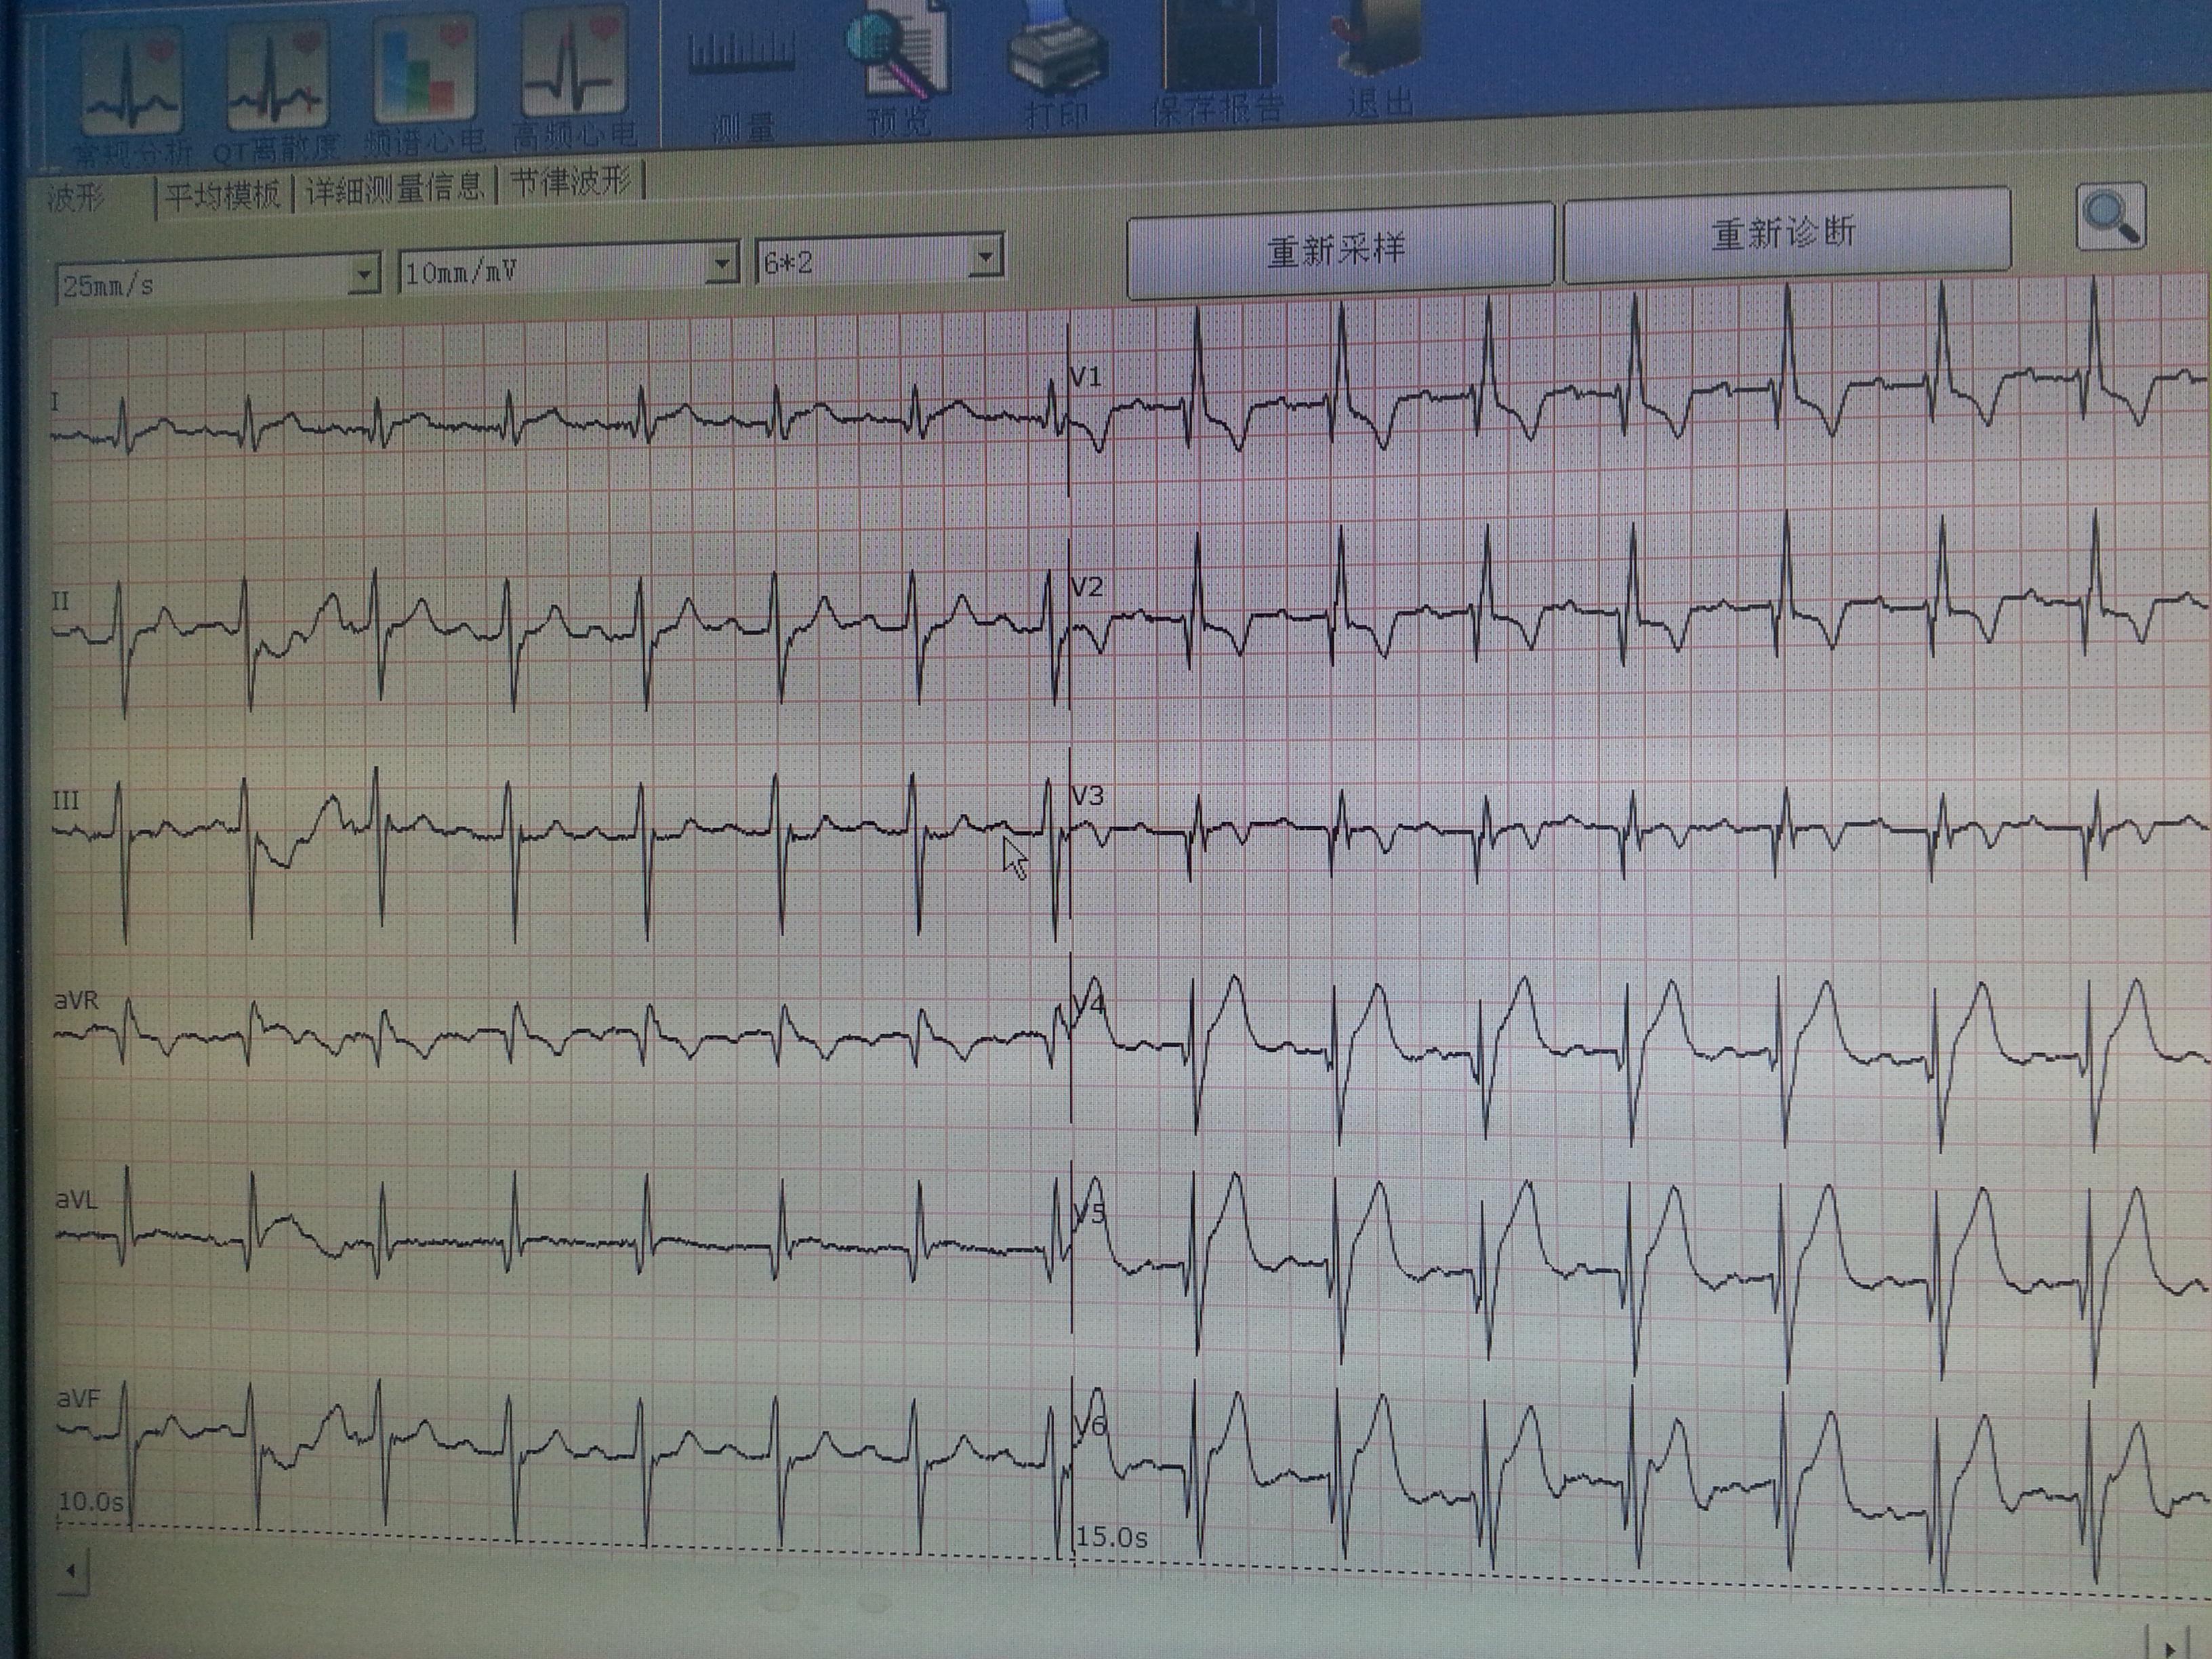 患者,男84岁,50天前因心梗住院治疗,这是今天20秒内的2张心电图